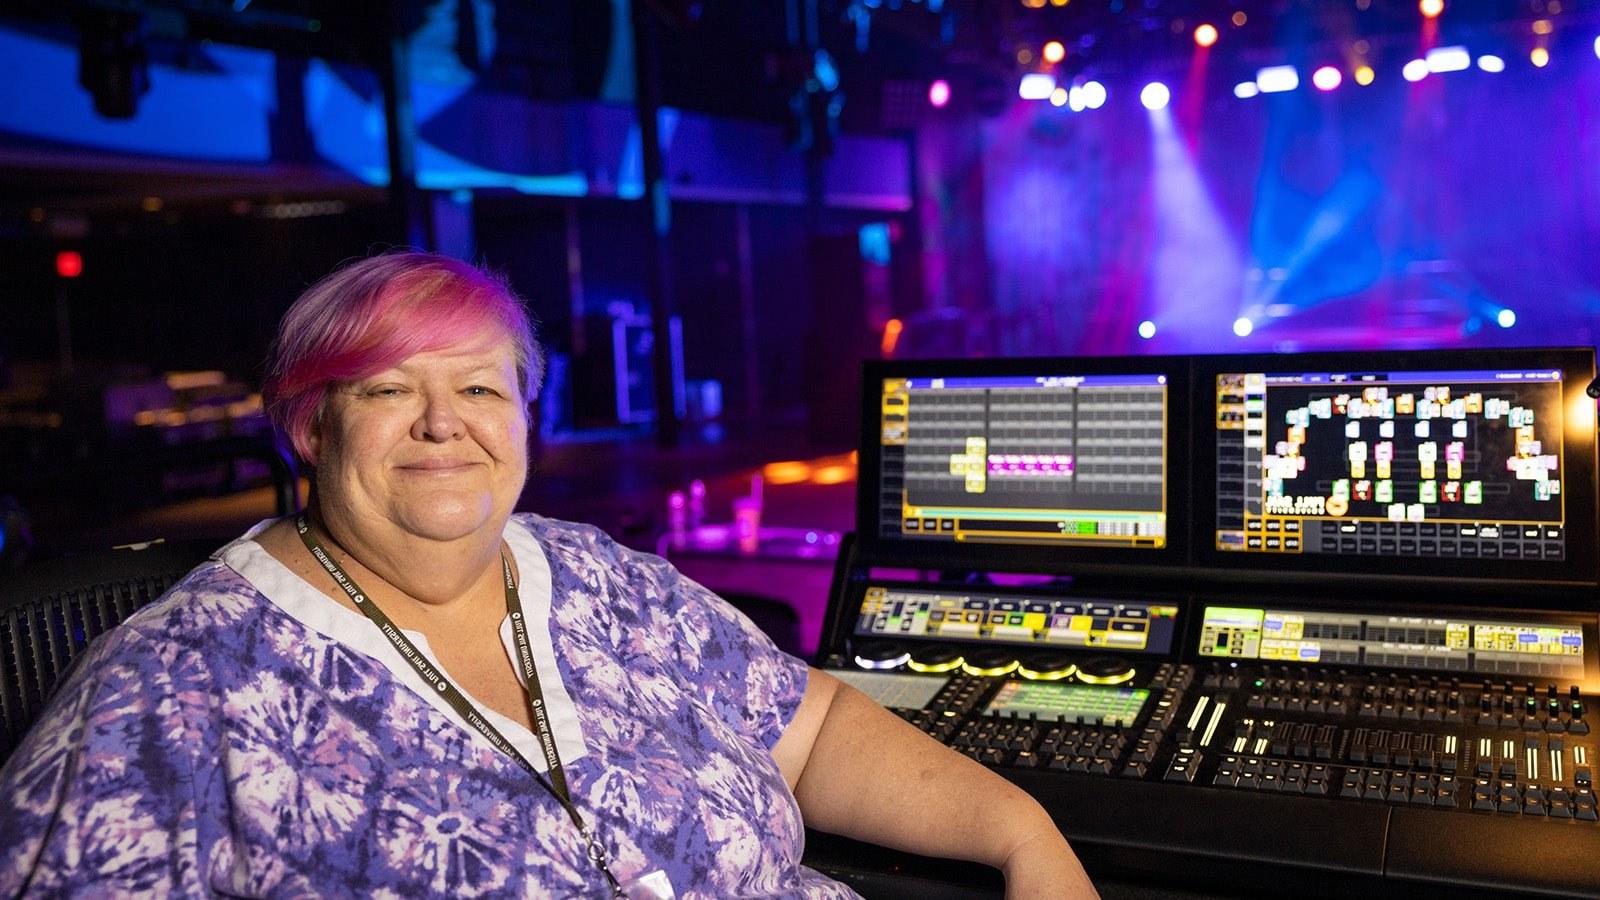 苏珊·凯莱赫坐在灯光控制台前. 她身后的舞台被紫色、蓝色和白色的灯光照亮.